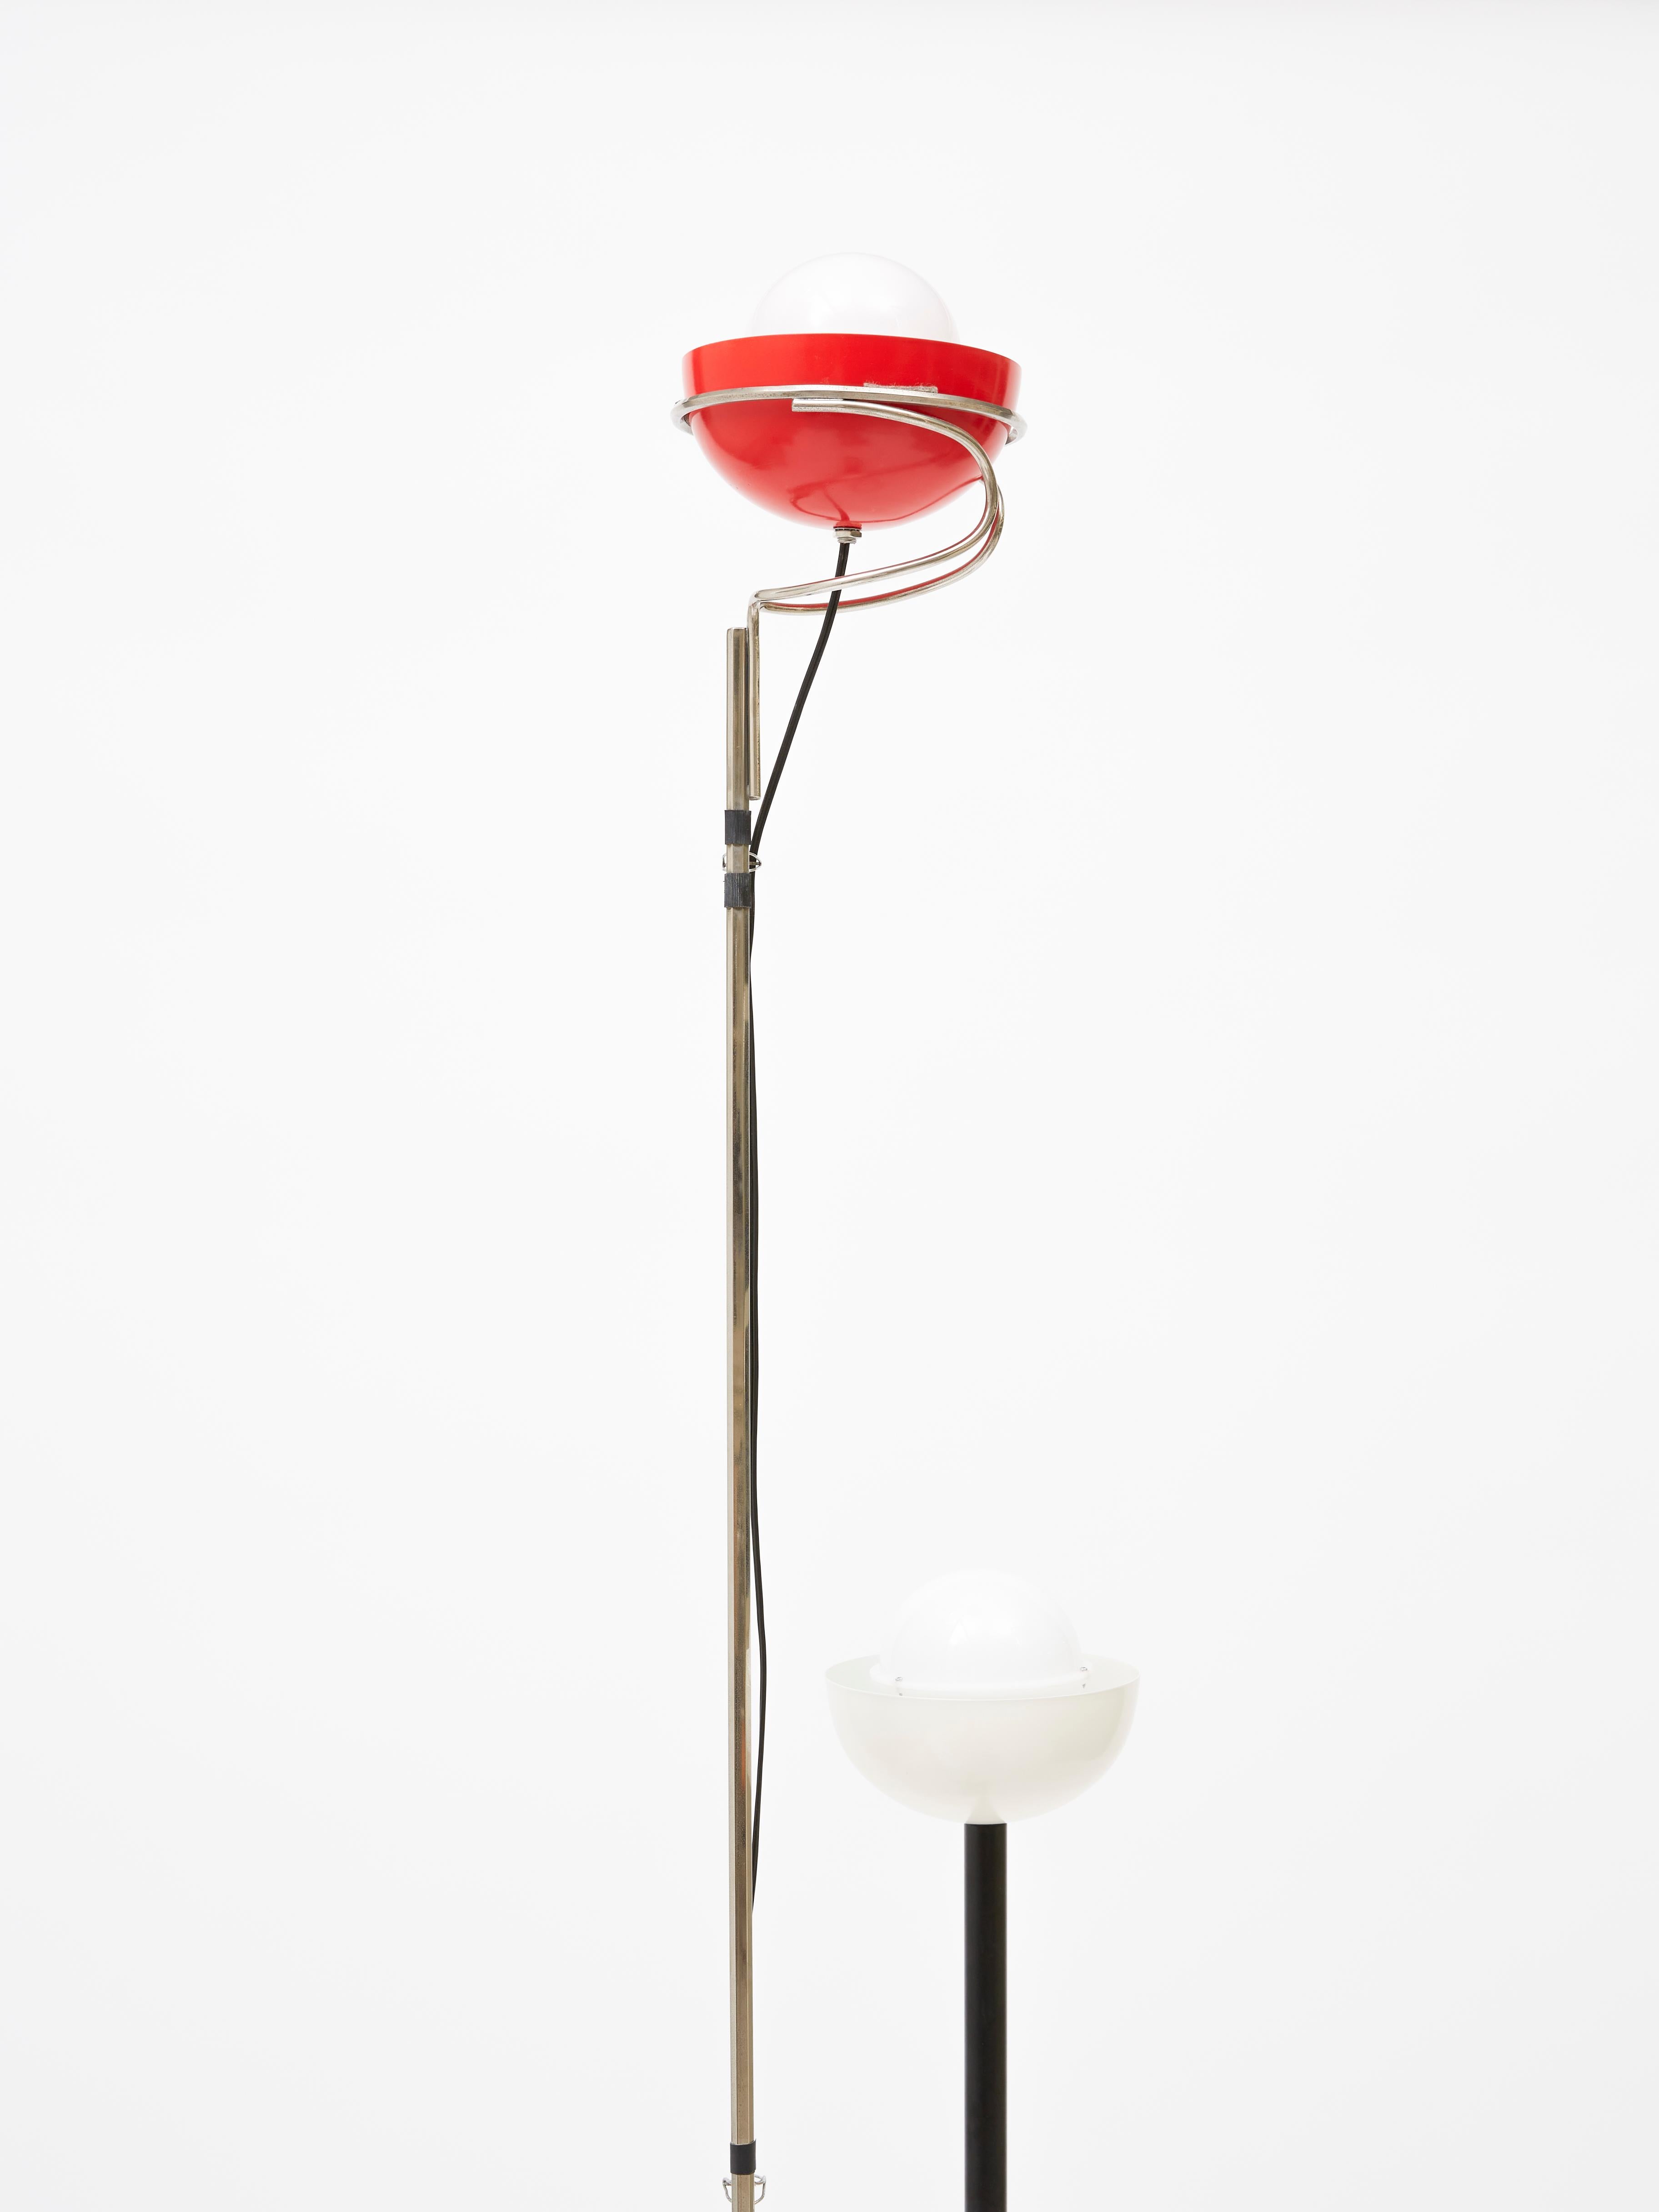 Morse Clash Castiglioni Lamp In Excellent Condition For Sale In Milano, IT